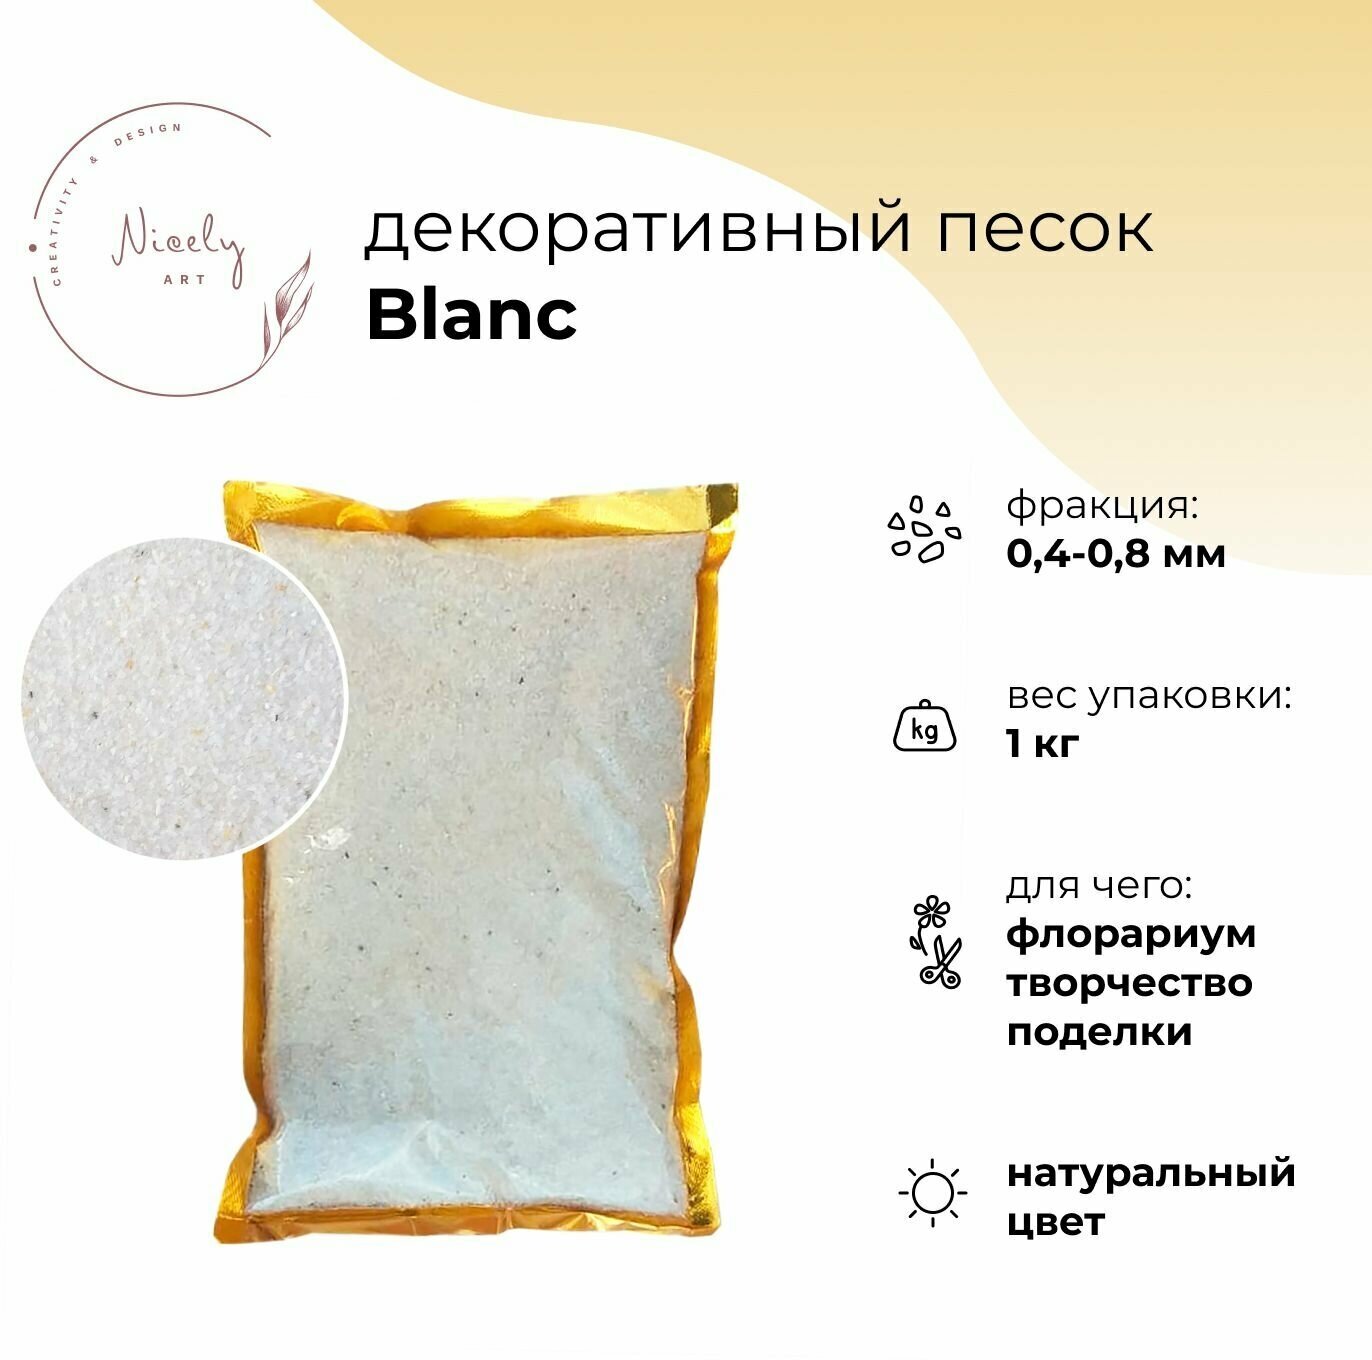 Декоративный минеральный песок NICELY Blanc 1 кг для творчества и поделок для флорариума 04-08 мм